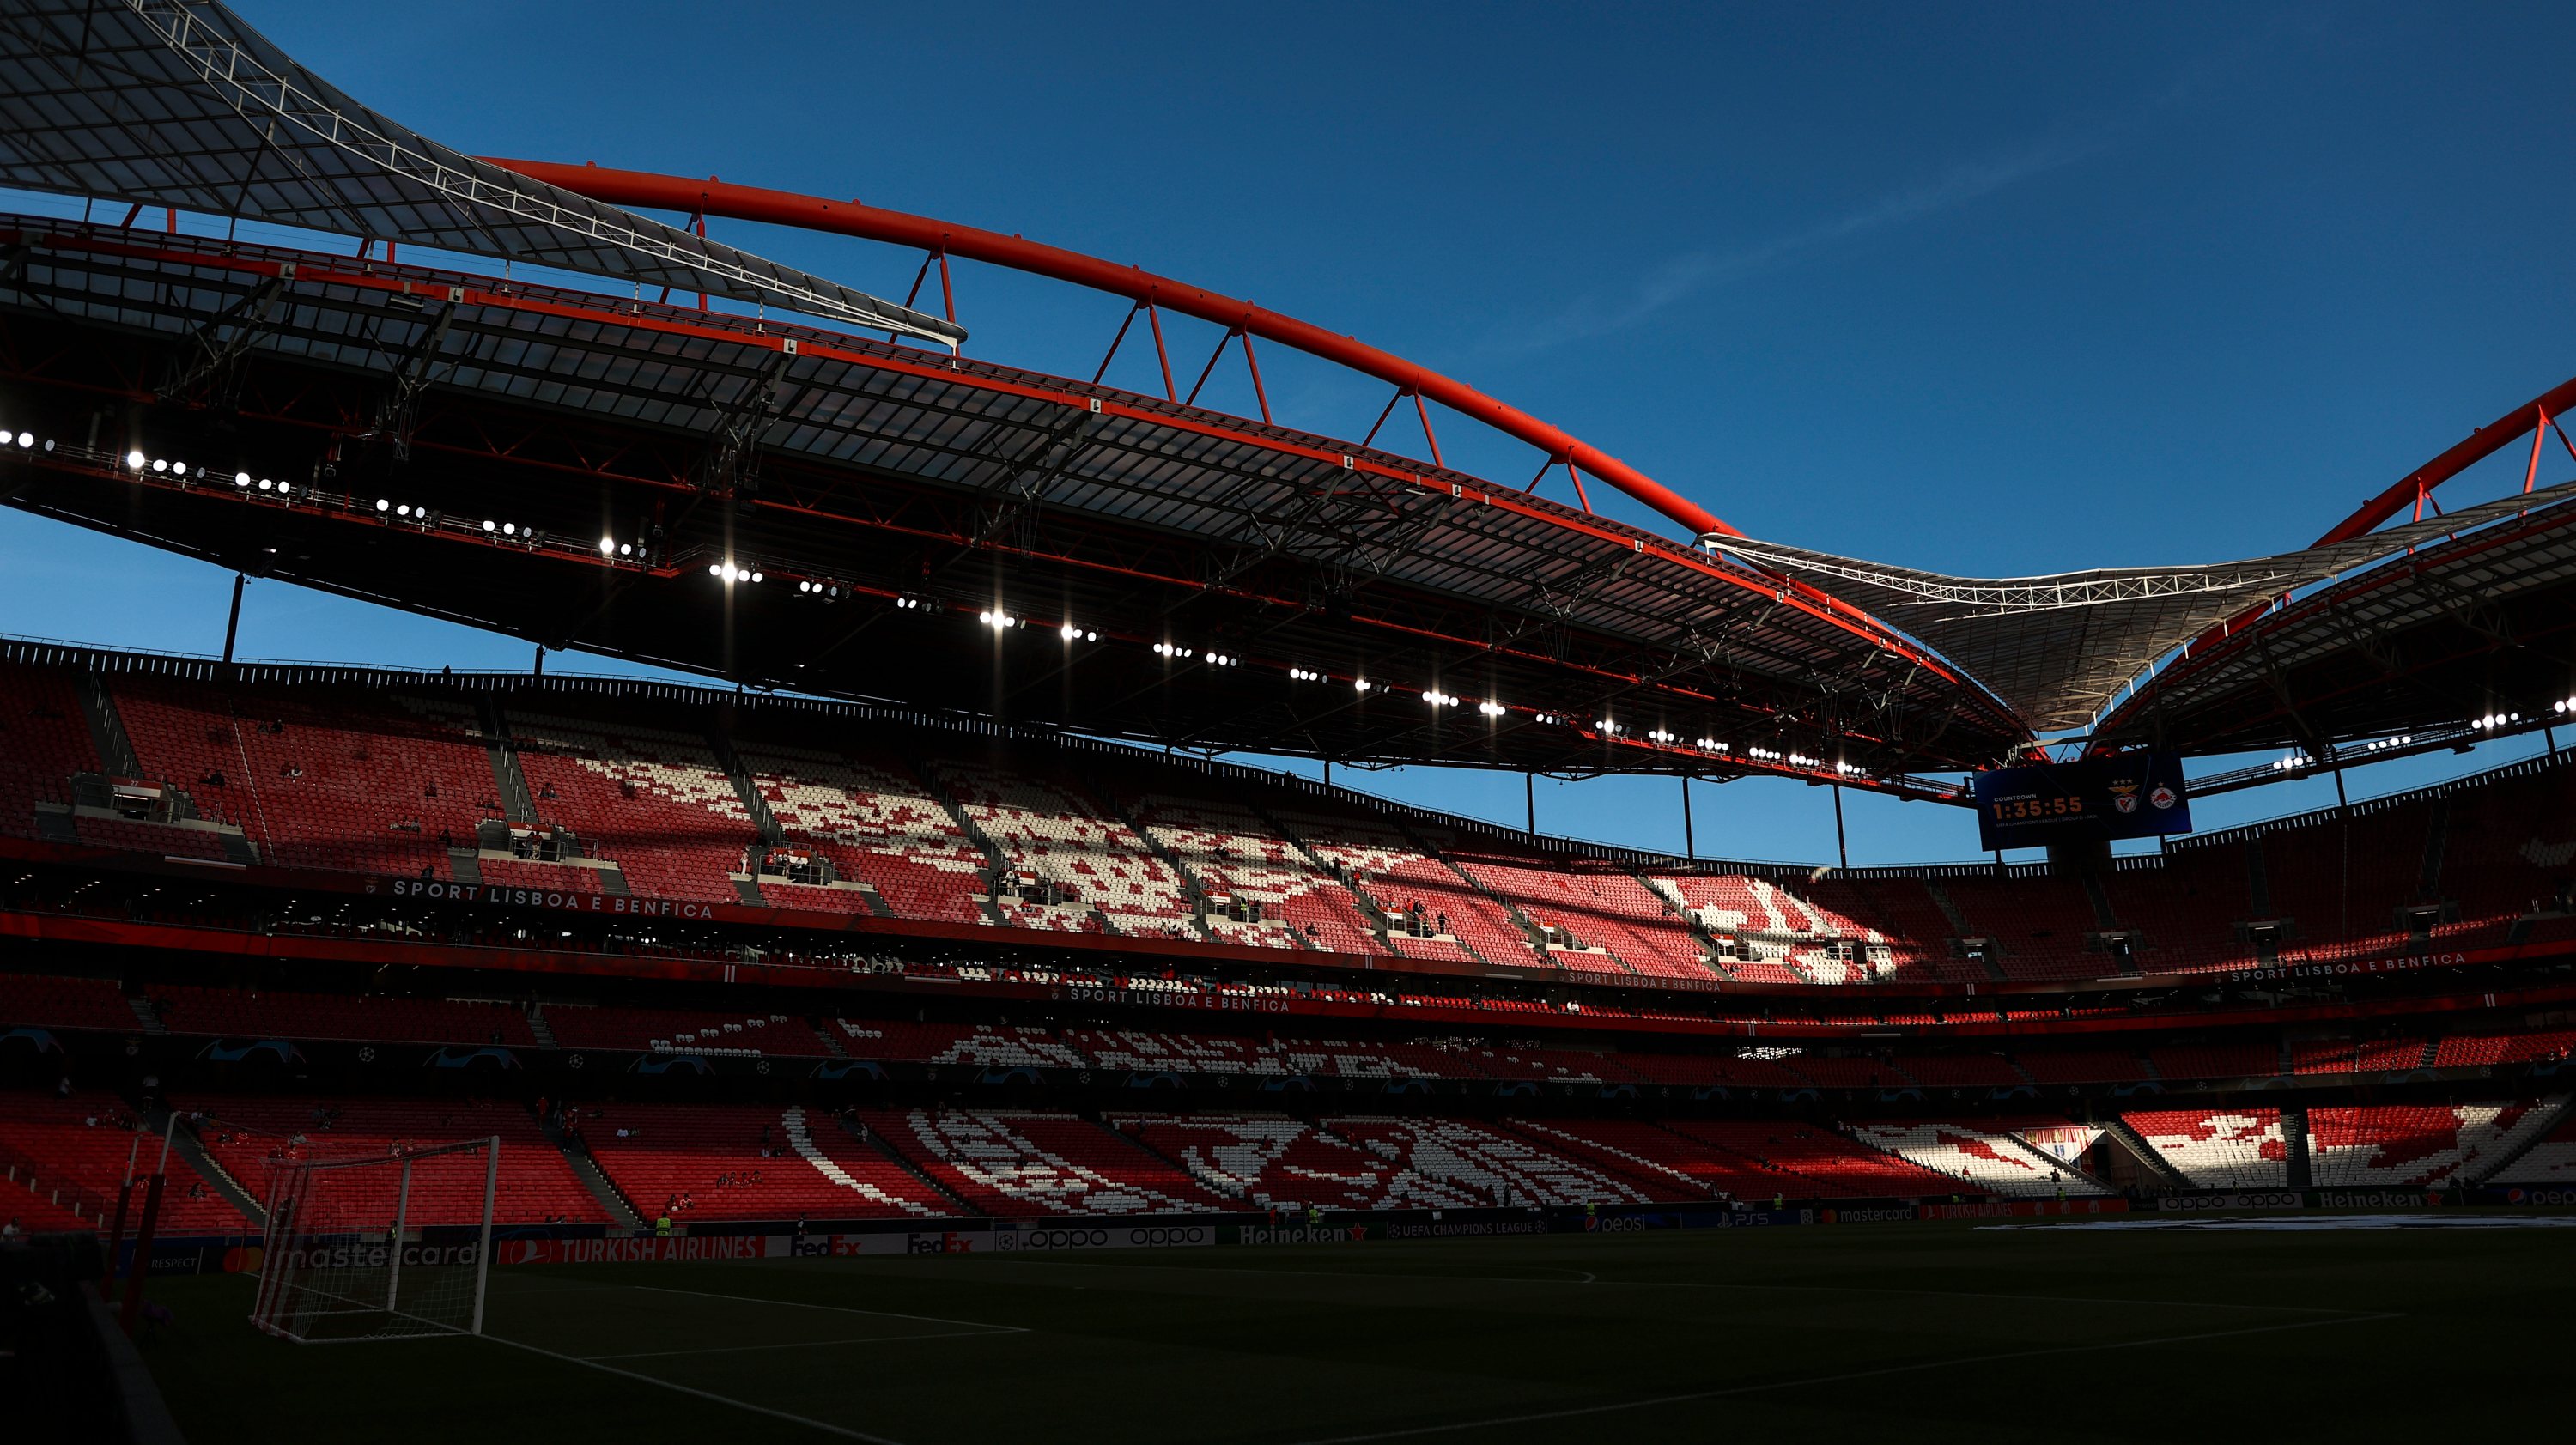 Portugal espera receber uma meia-final do Campeonato do Mundo no Estádio da Luz, com capacidade de 65.000 pessoas. Questão? Barcelona também pediu e uma deverá ser sempre de Marrocos